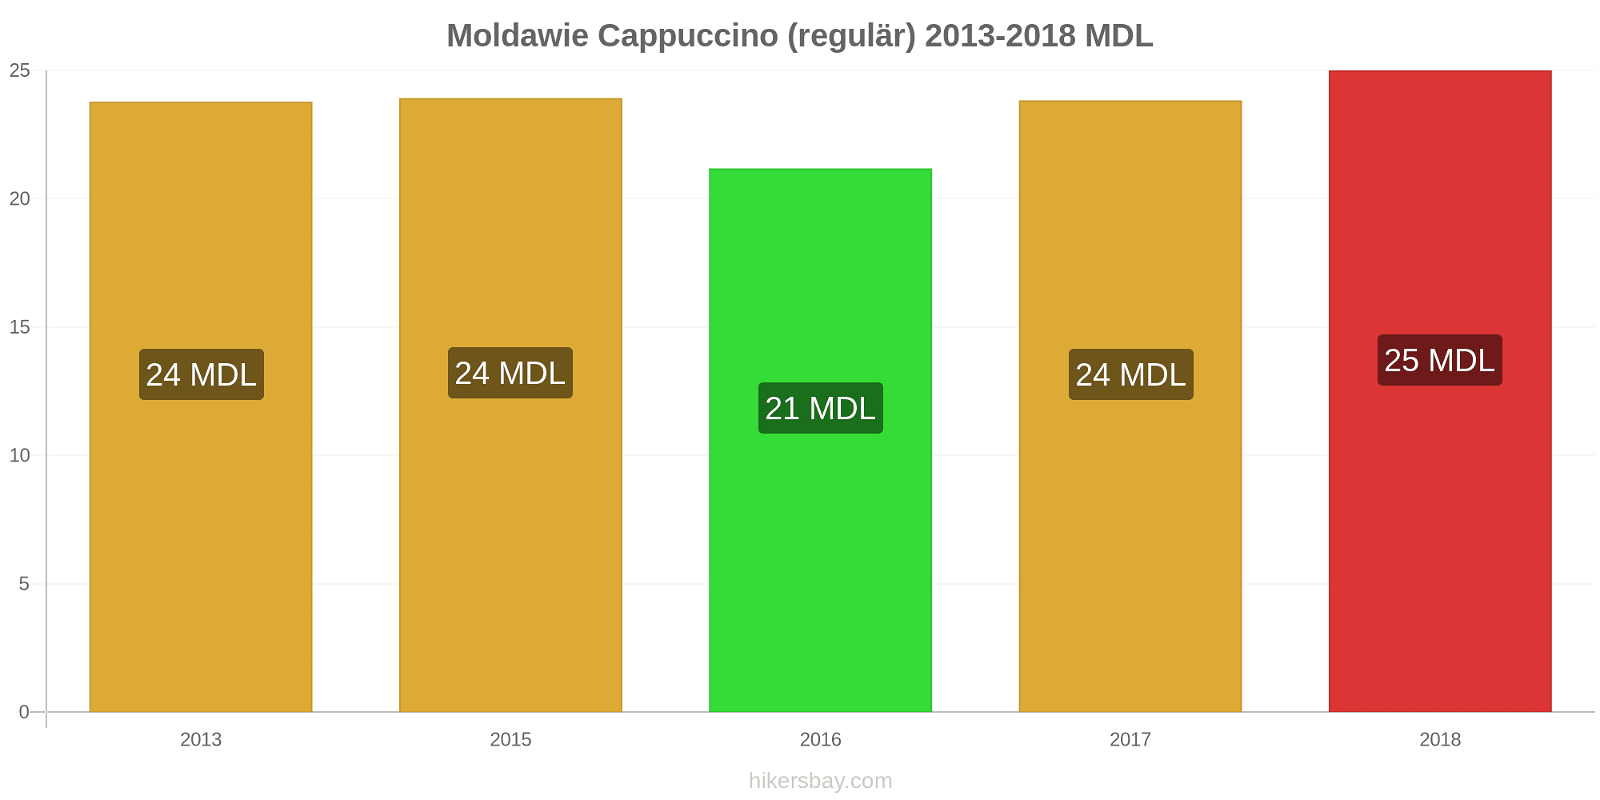 Moldawie Preisänderungen Cappuccino hikersbay.com